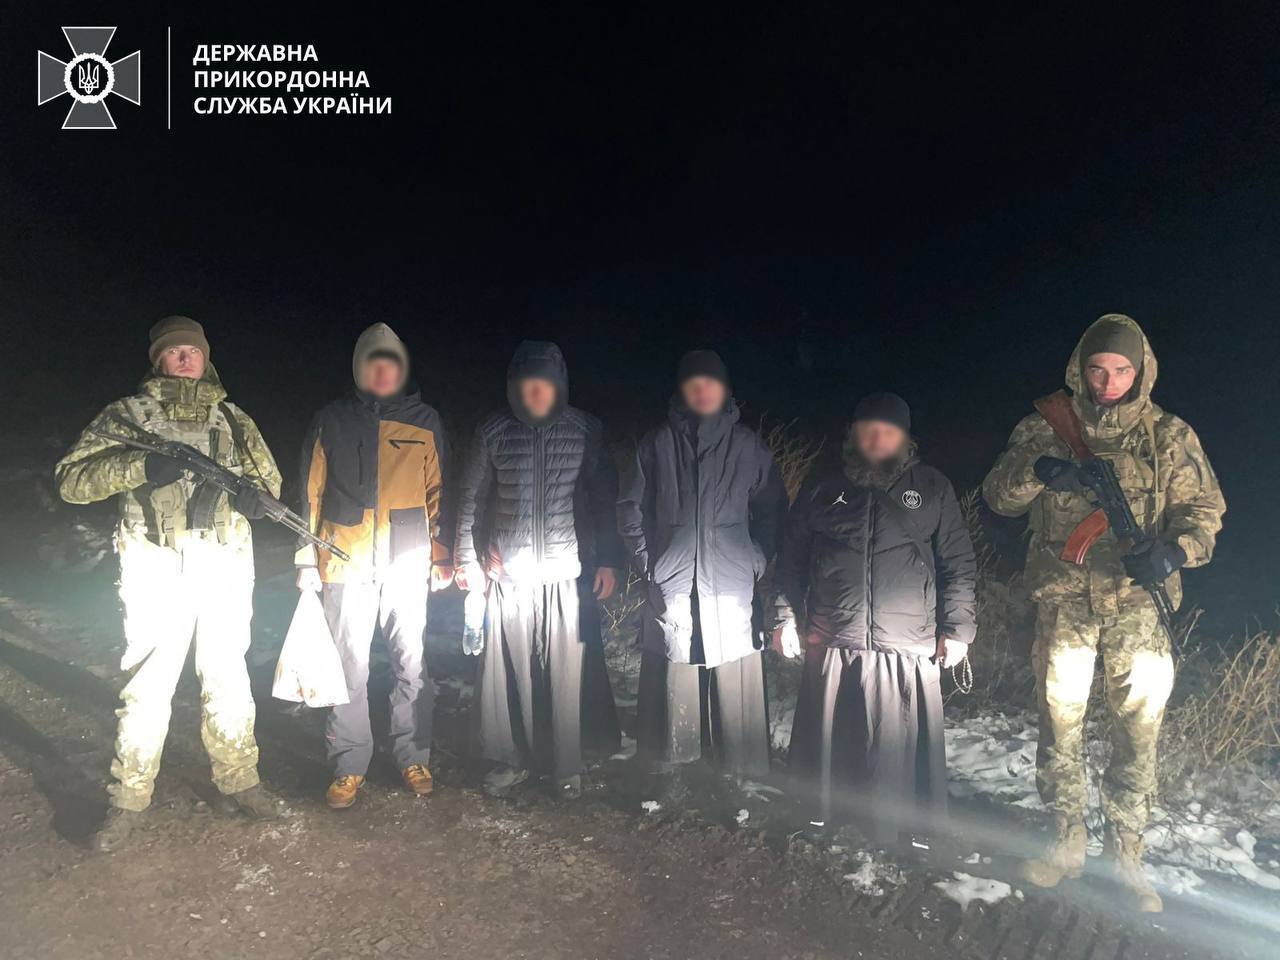 У границы с Молдовой поймали уклонистов в наряде батюшек: "маскарад" беглецов быстро разоблачили. Фото